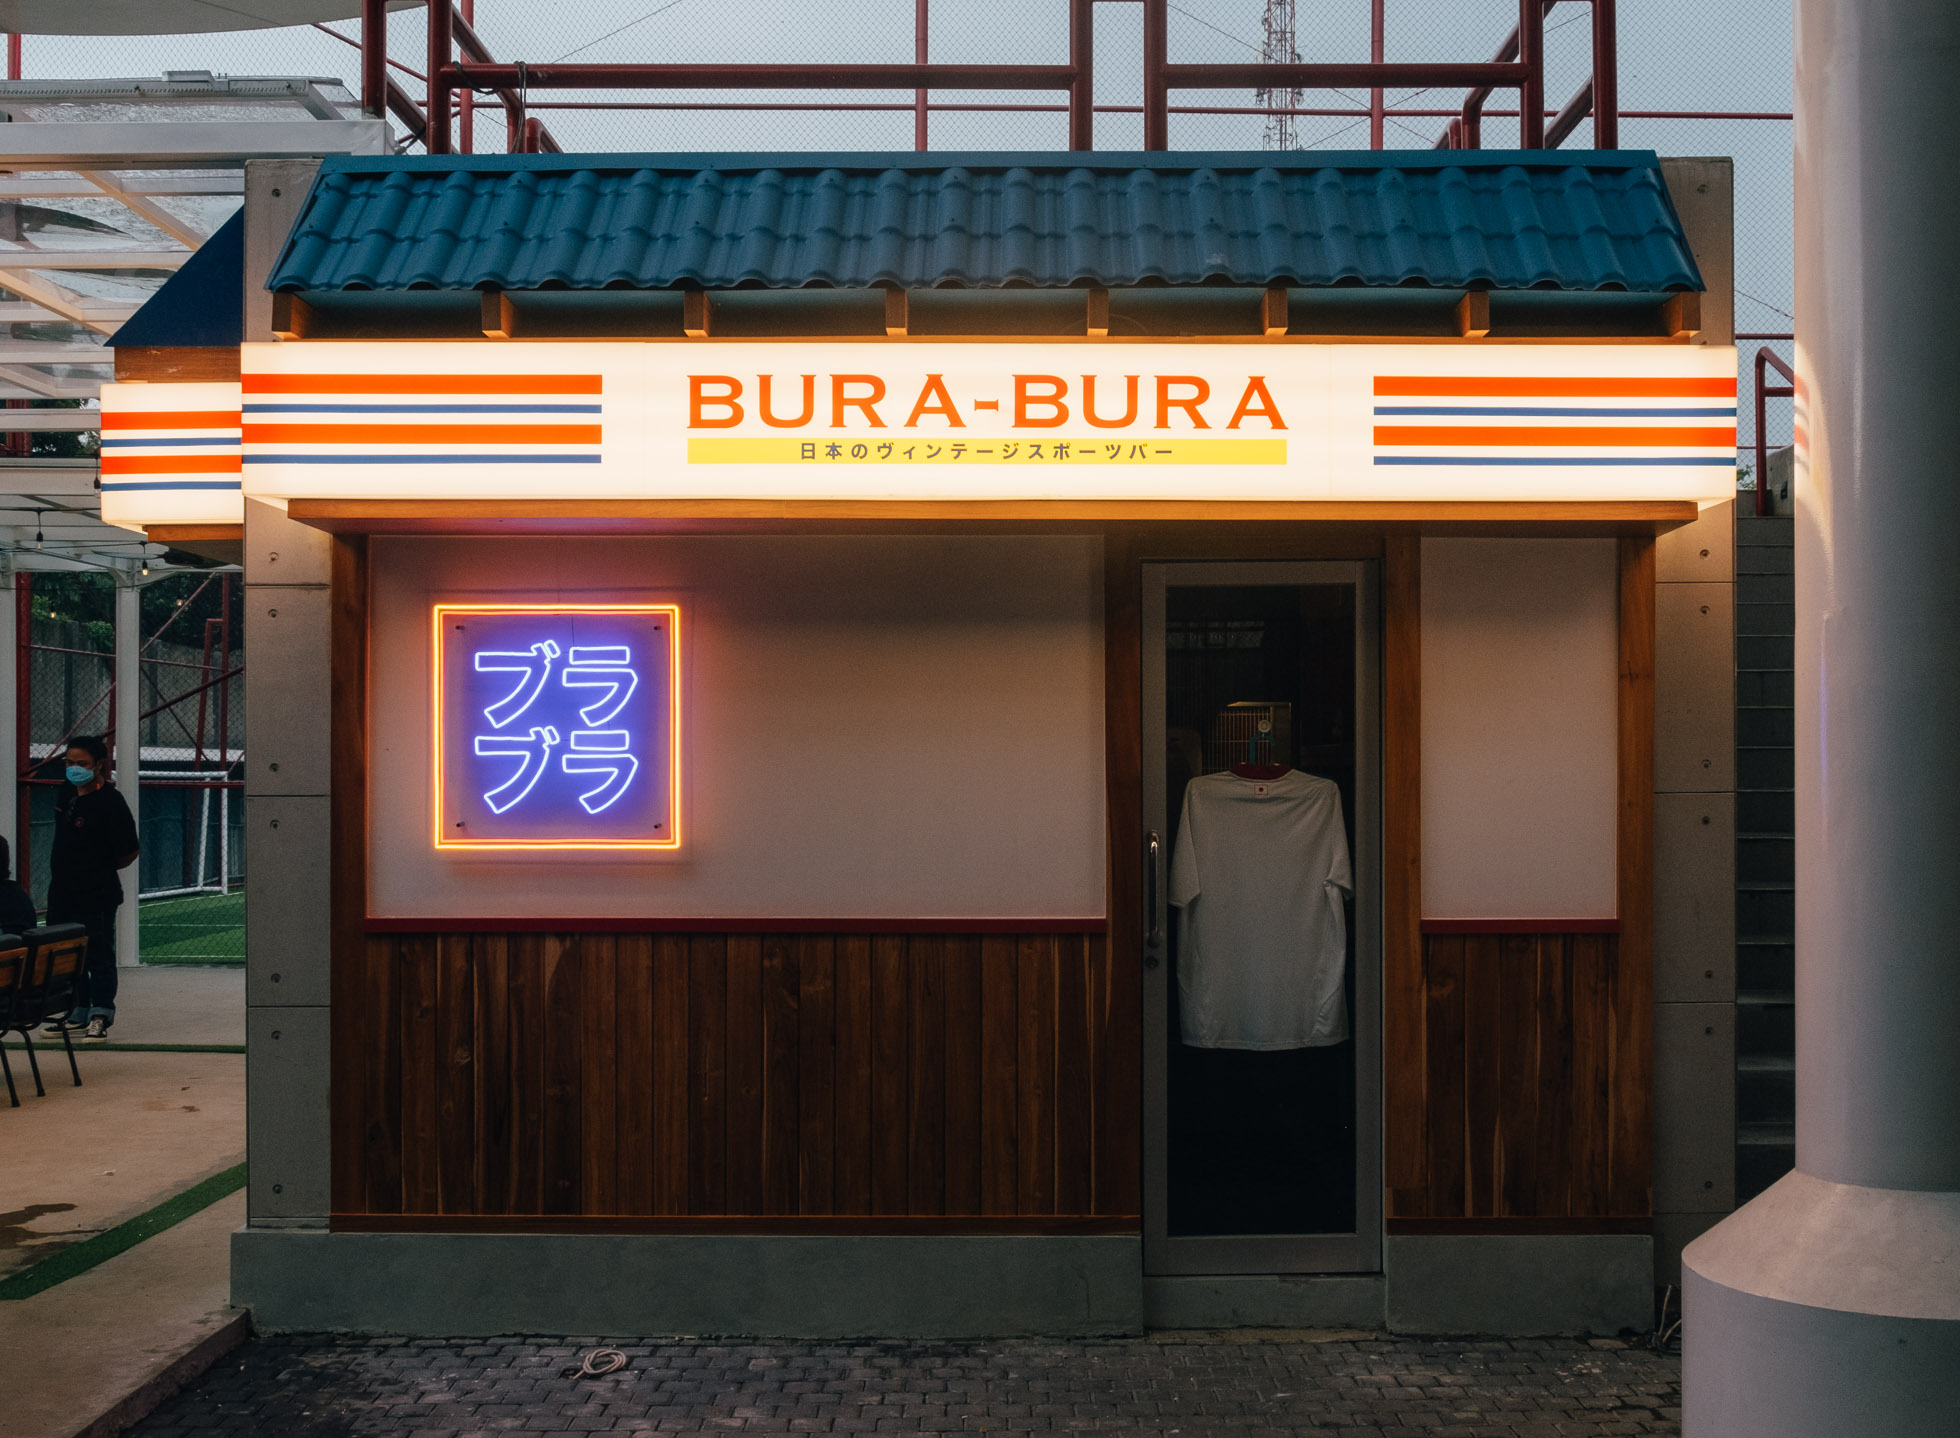 The BURA BURA Way